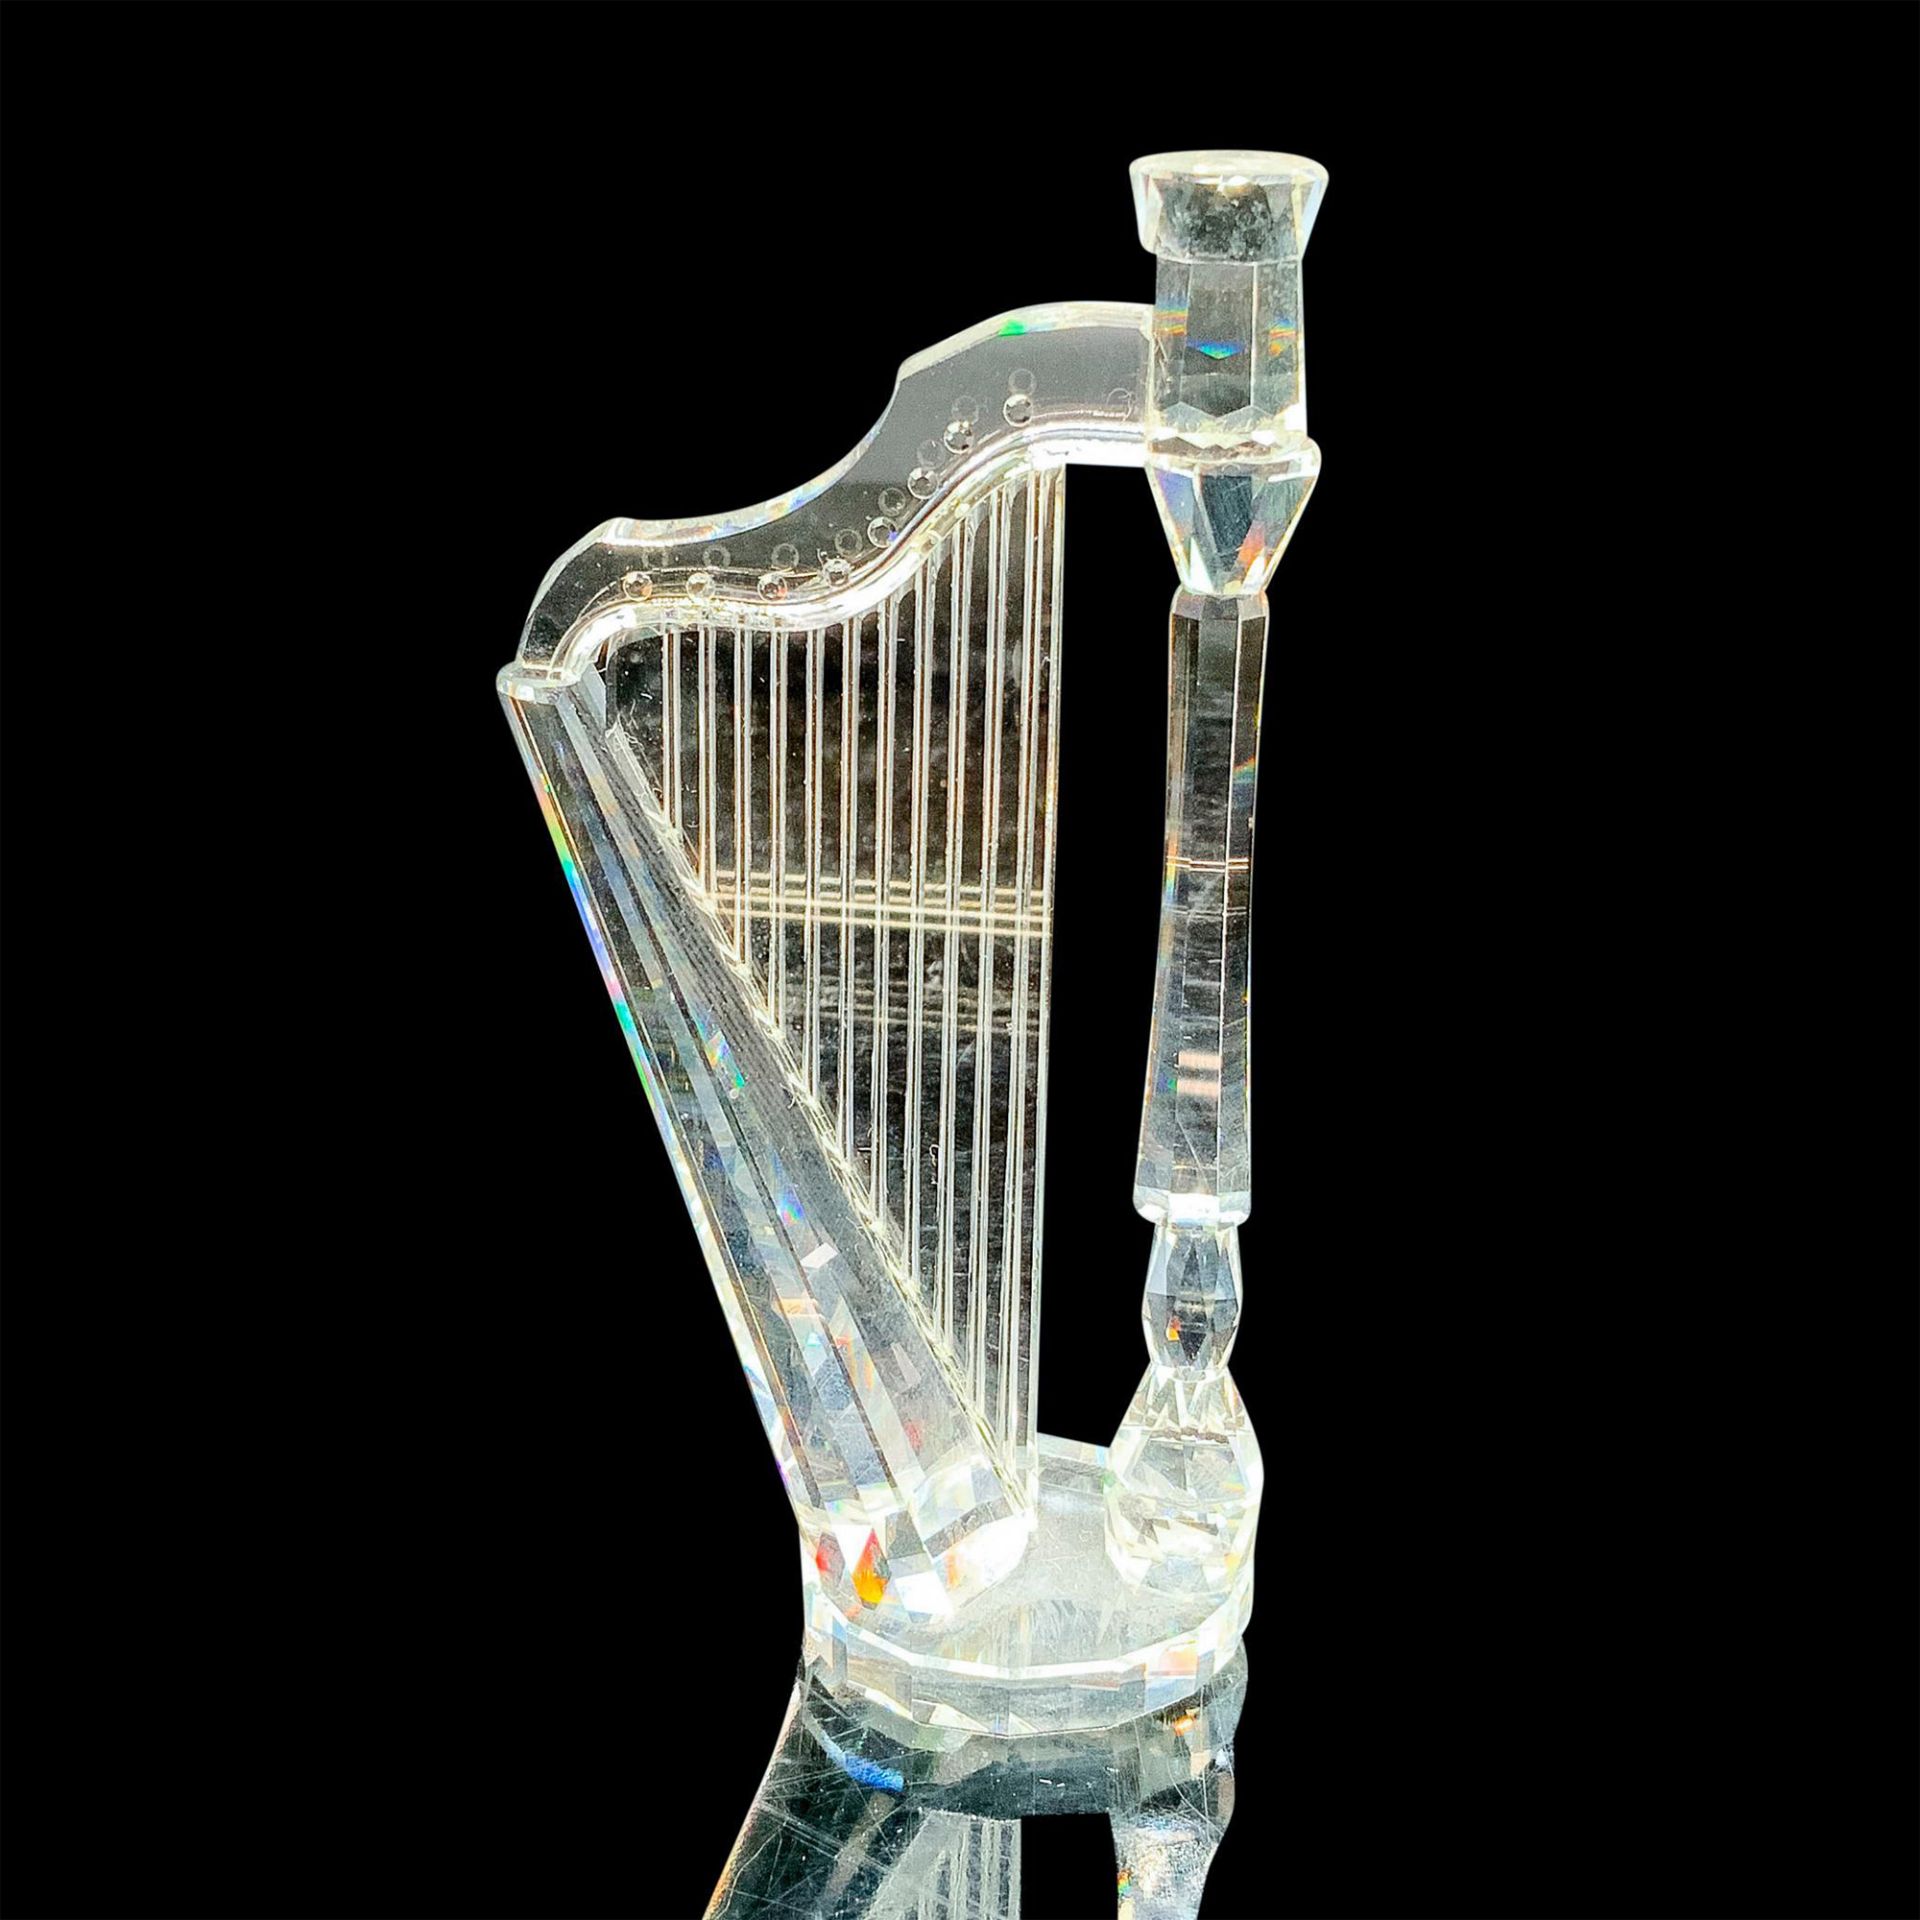 Swarovski Silver Crystal Figurine, Harp